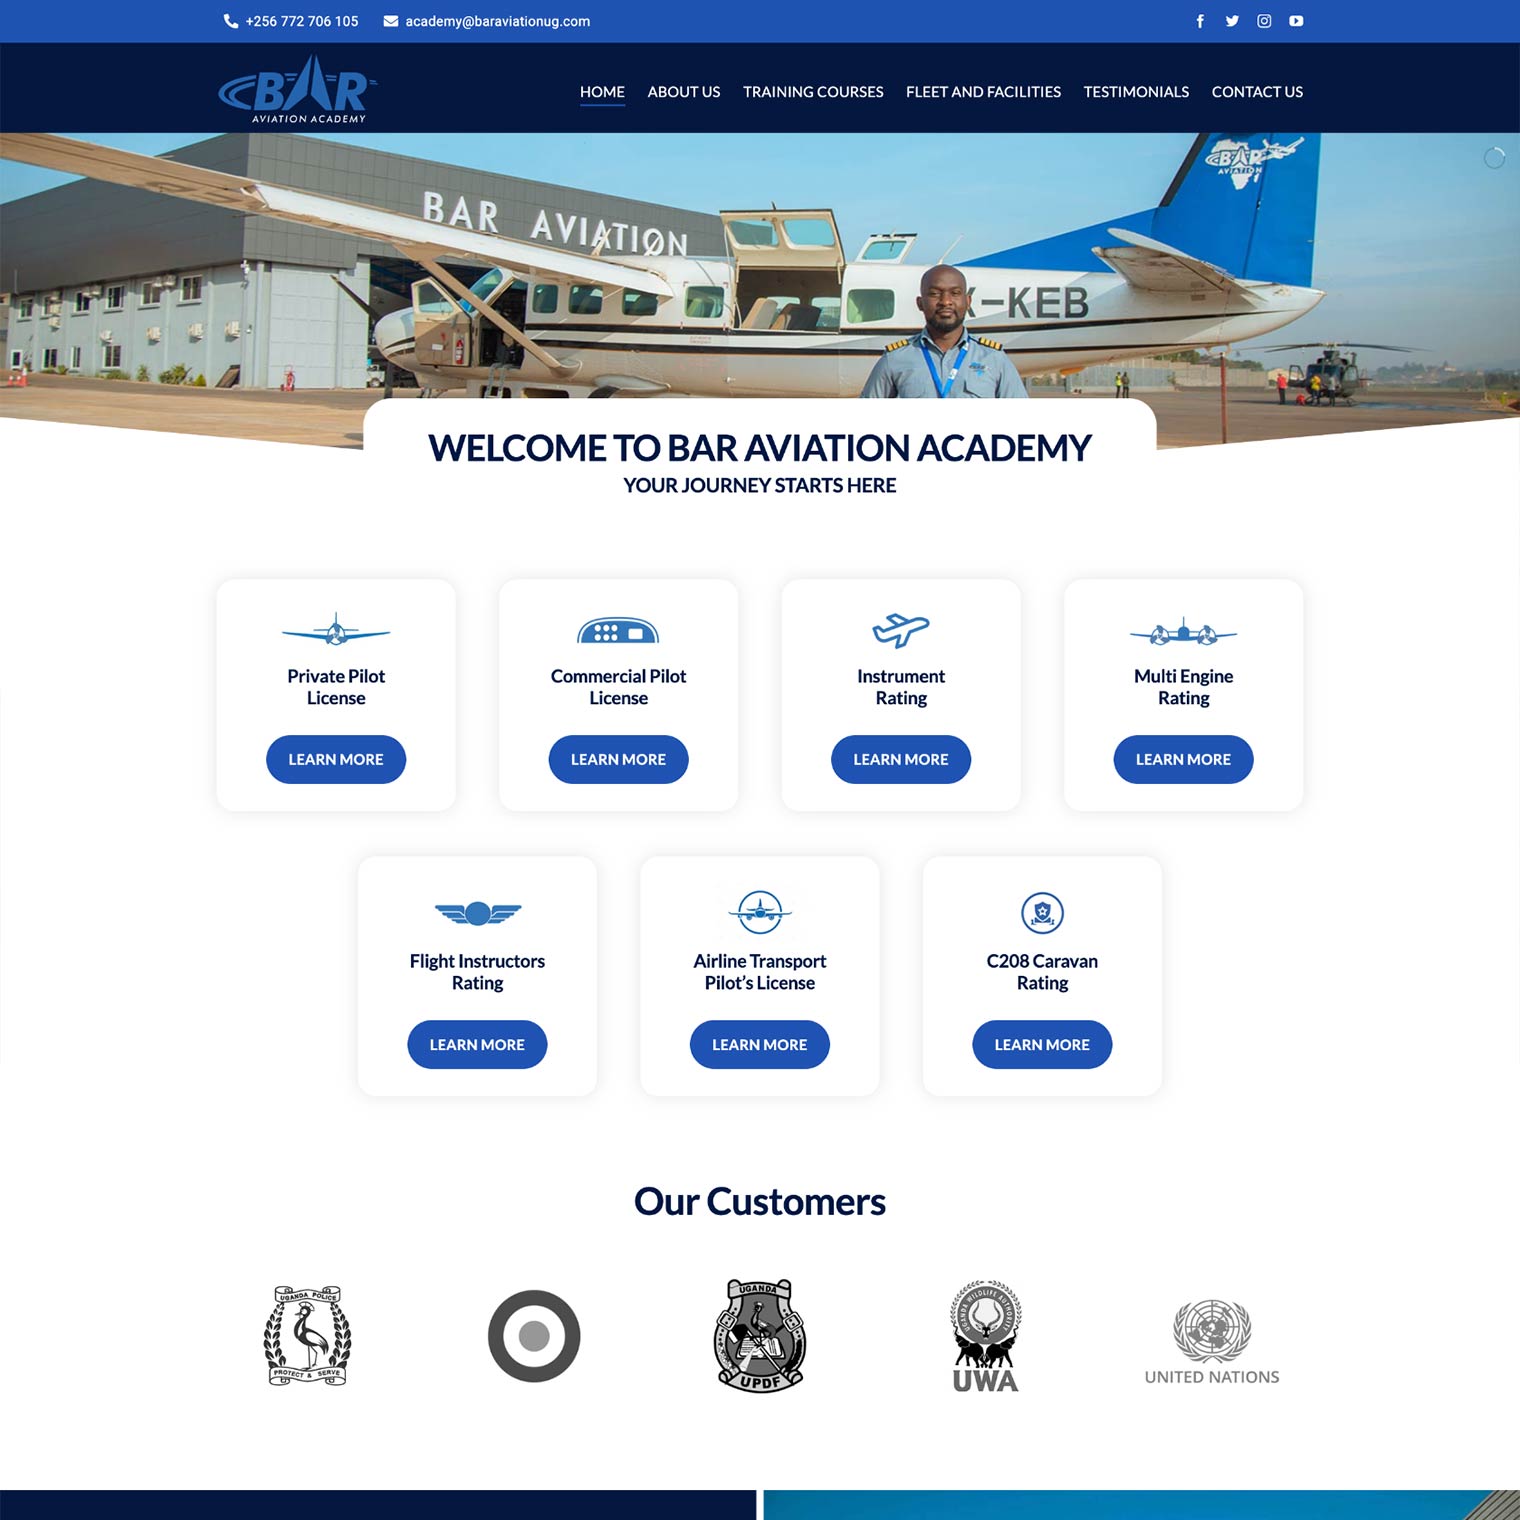 BAR Aviation Academy